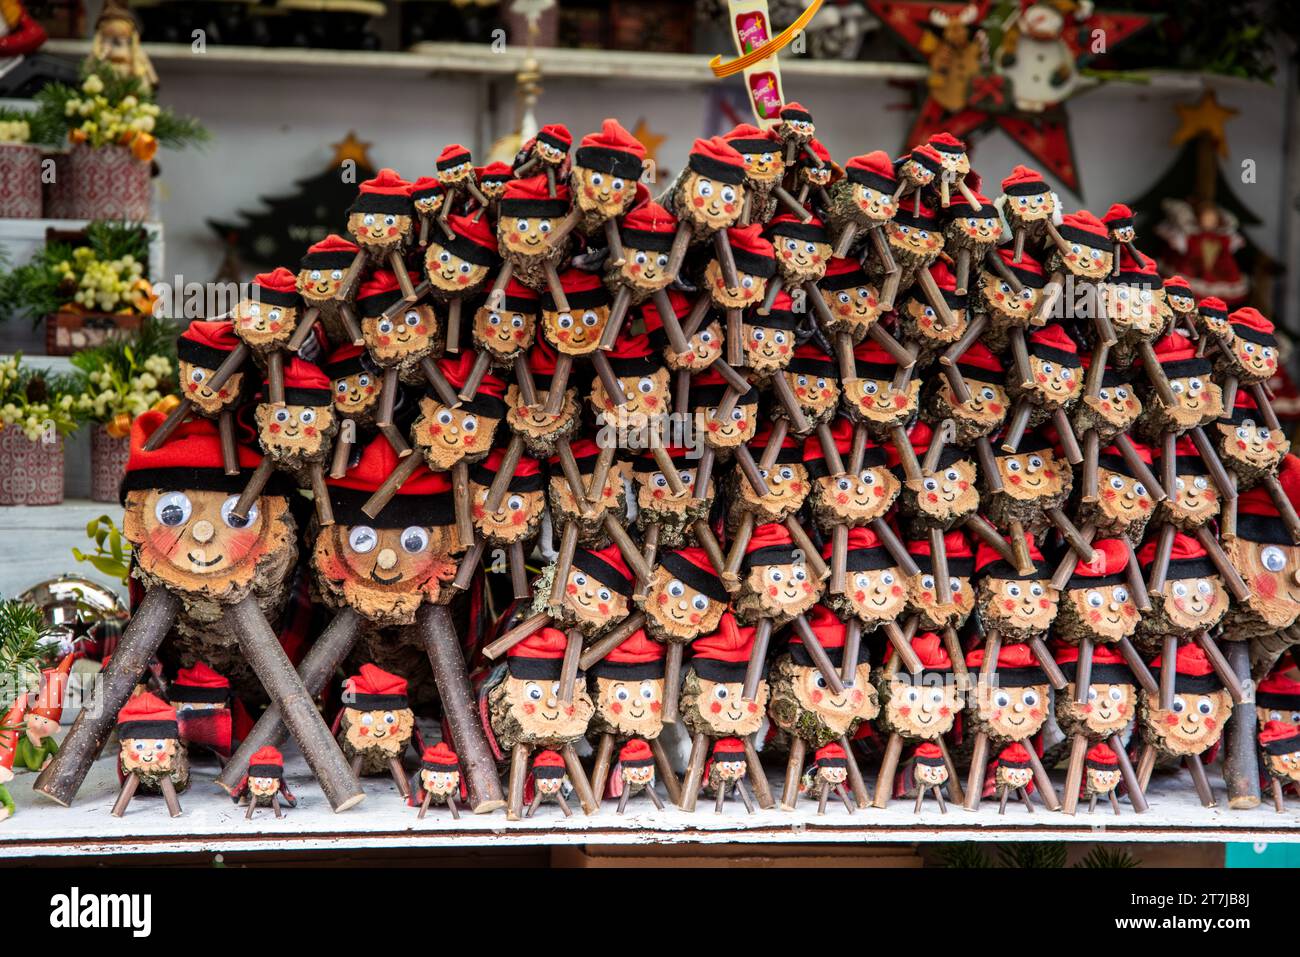 L'abbondanza festiva del mercato di Santa Llucia: Una vivace esposizione di tronchi di Caga Tió impilati, che abbracciano il tradizionale spirito natalizio catalano nel cuore della città Foto Stock